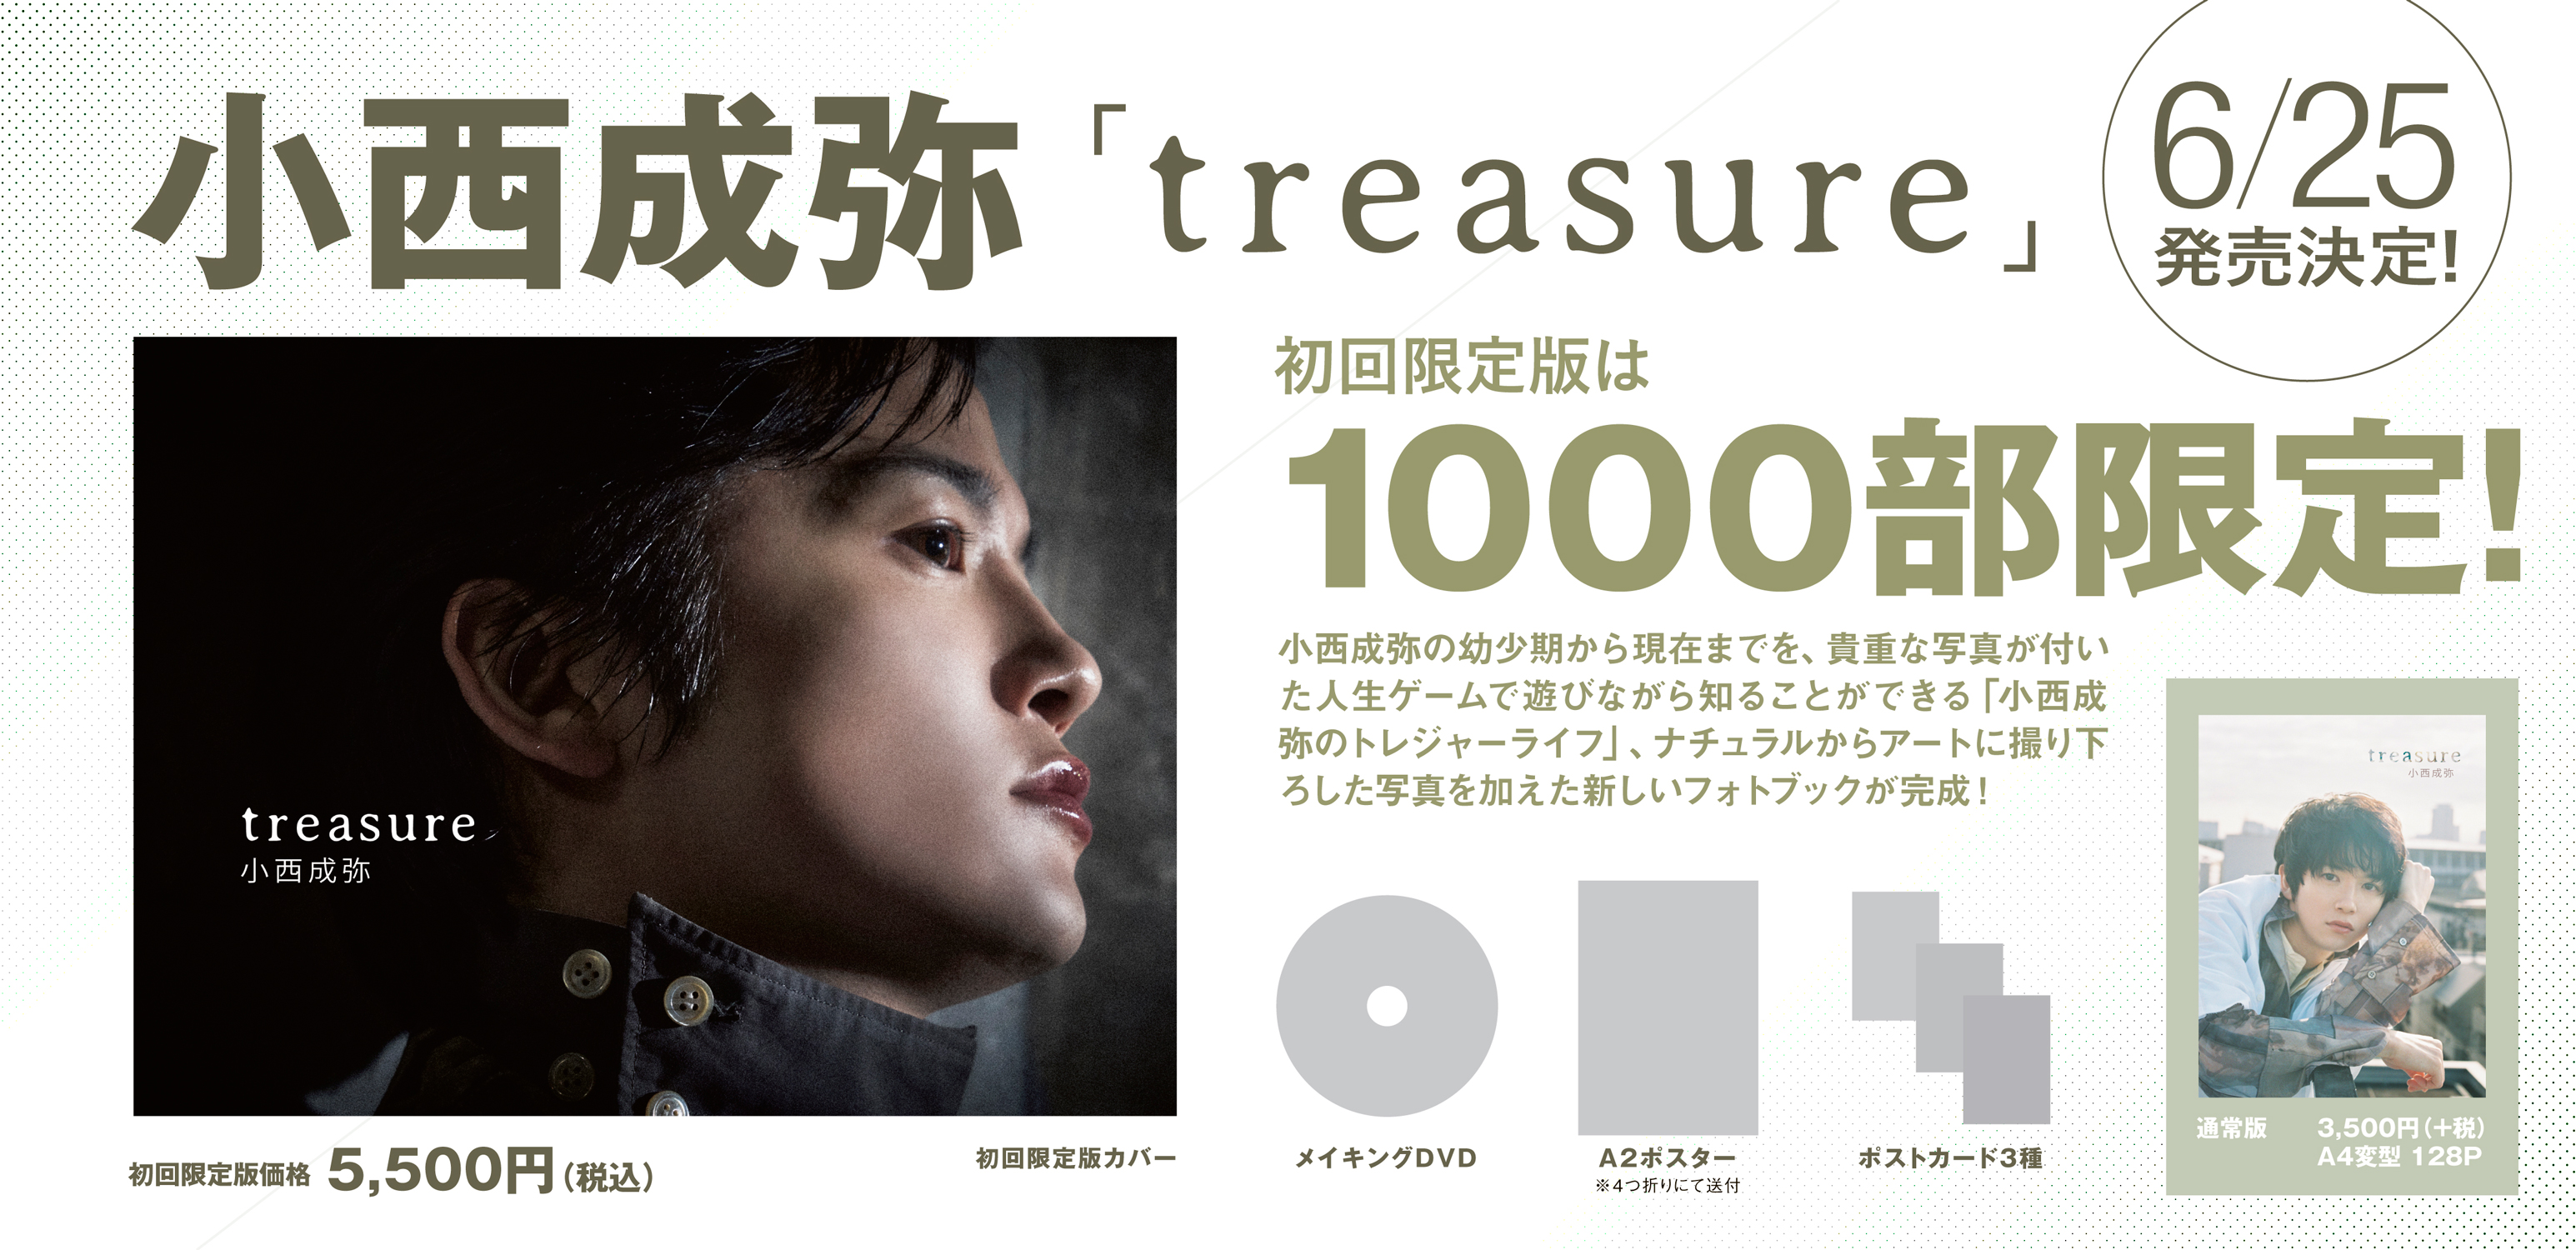 小西成弥 写真集『treasure』